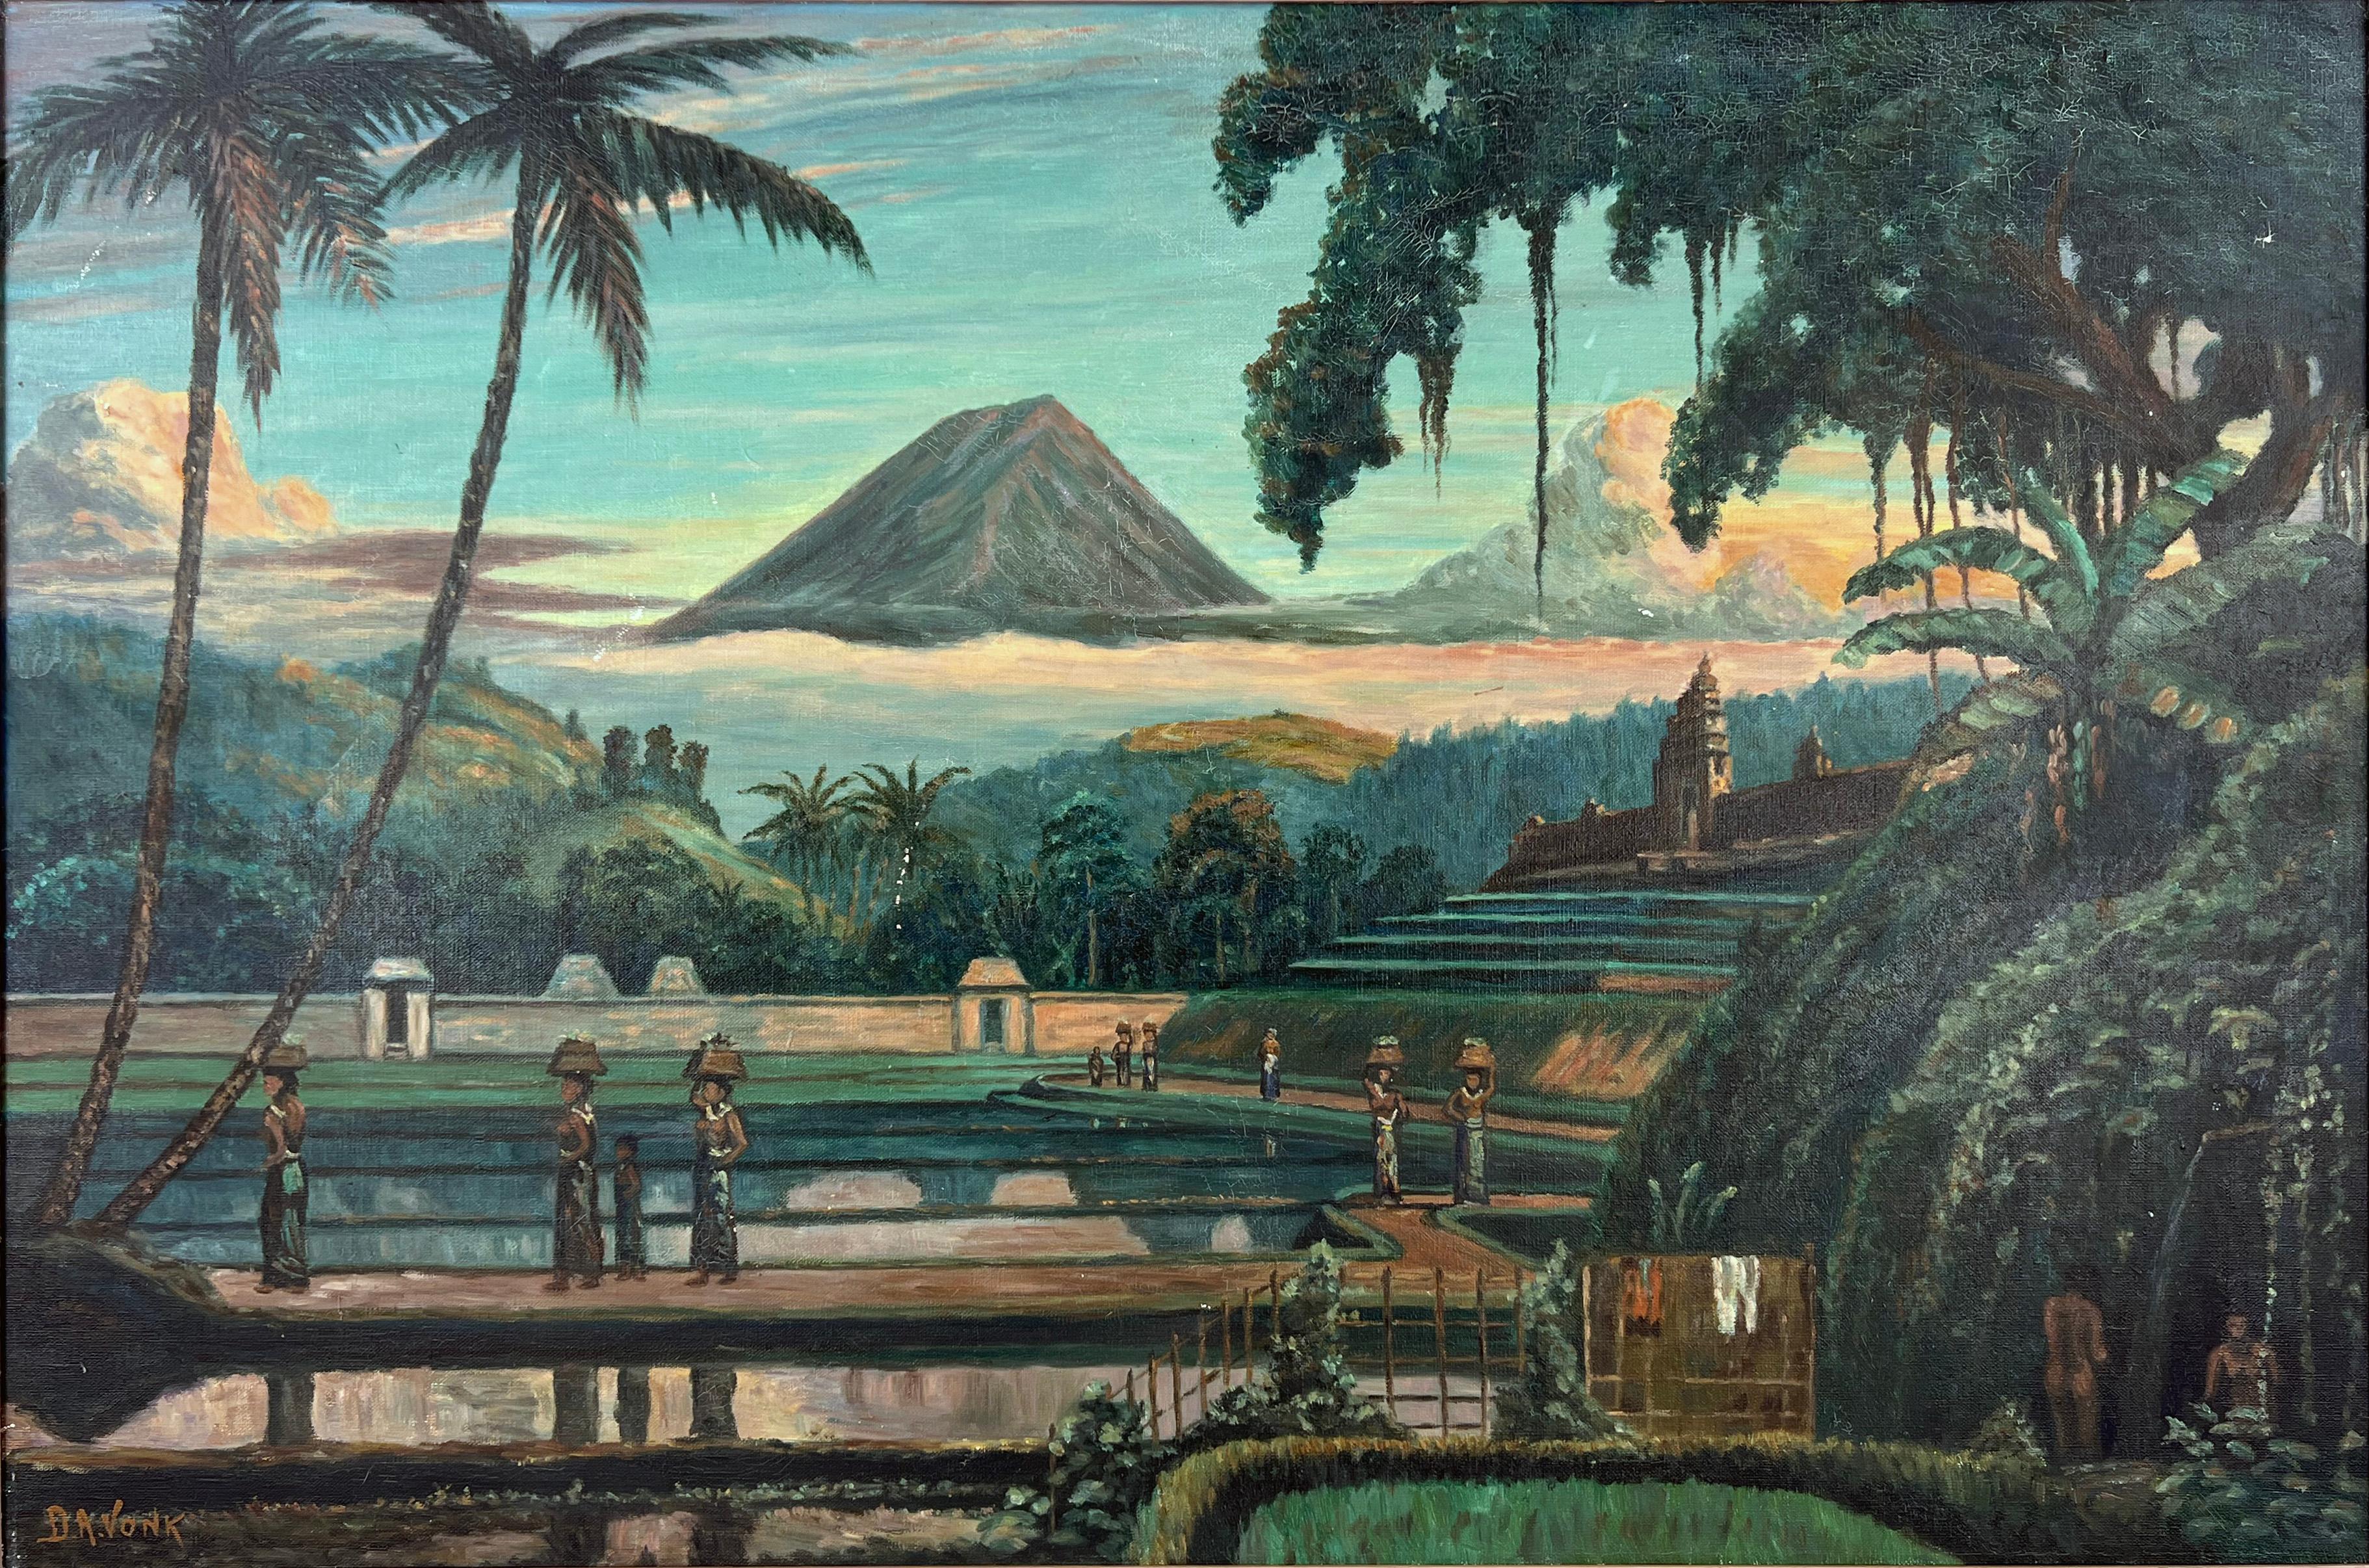 Mount Sumbing ou Gunung Sumbing, un volcan actif au centre de la Java, en Indonésie - Impressionnisme Painting par D. A. Vonk